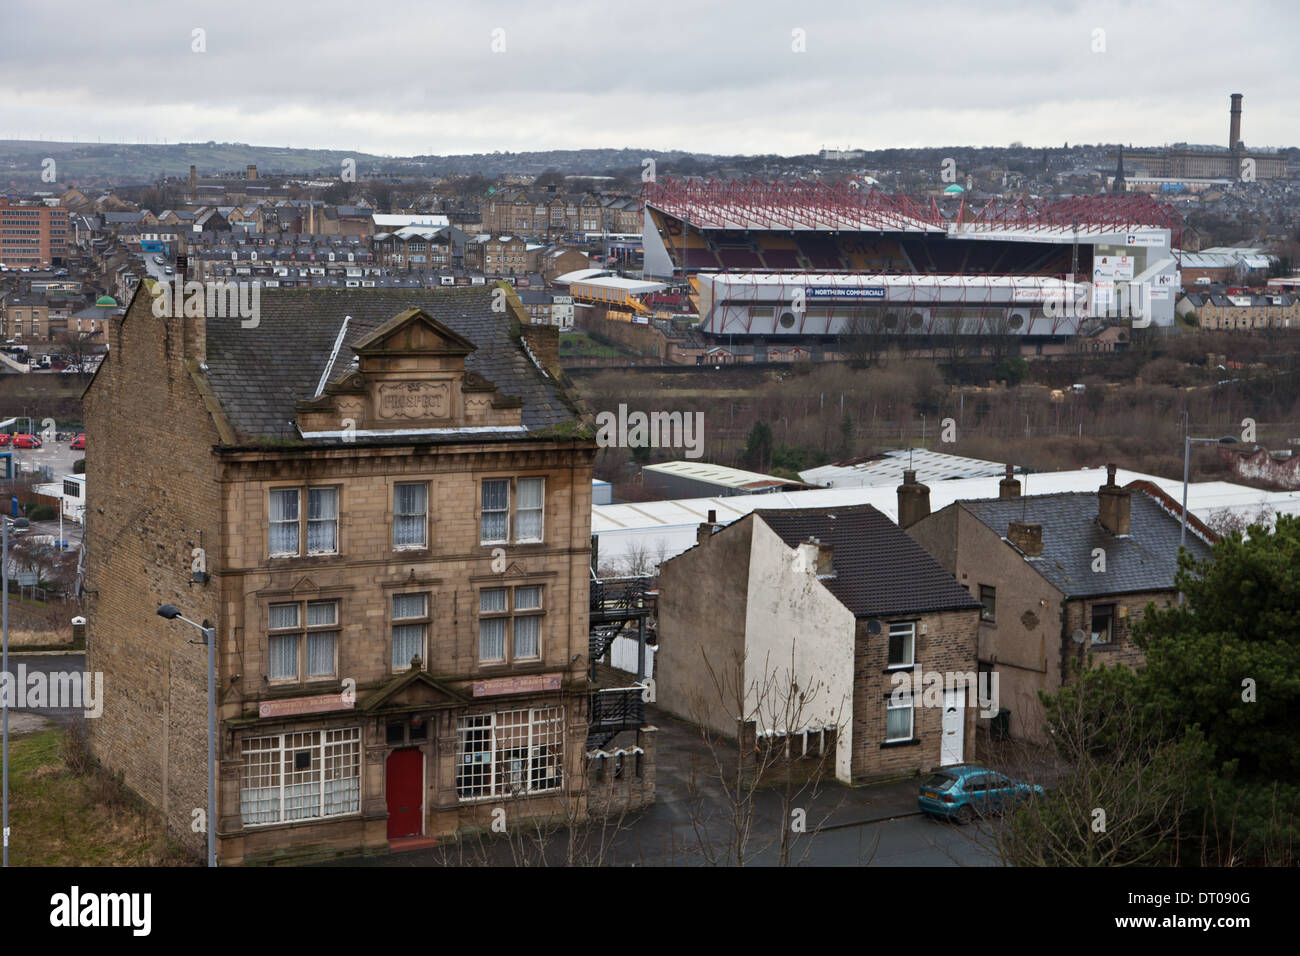 Terrain de football de la ville de Bradford, Valley Parade, une vue depuis une colline lointaine avec un pub au premier plan et construit des maisons en pierre Banque D'Images